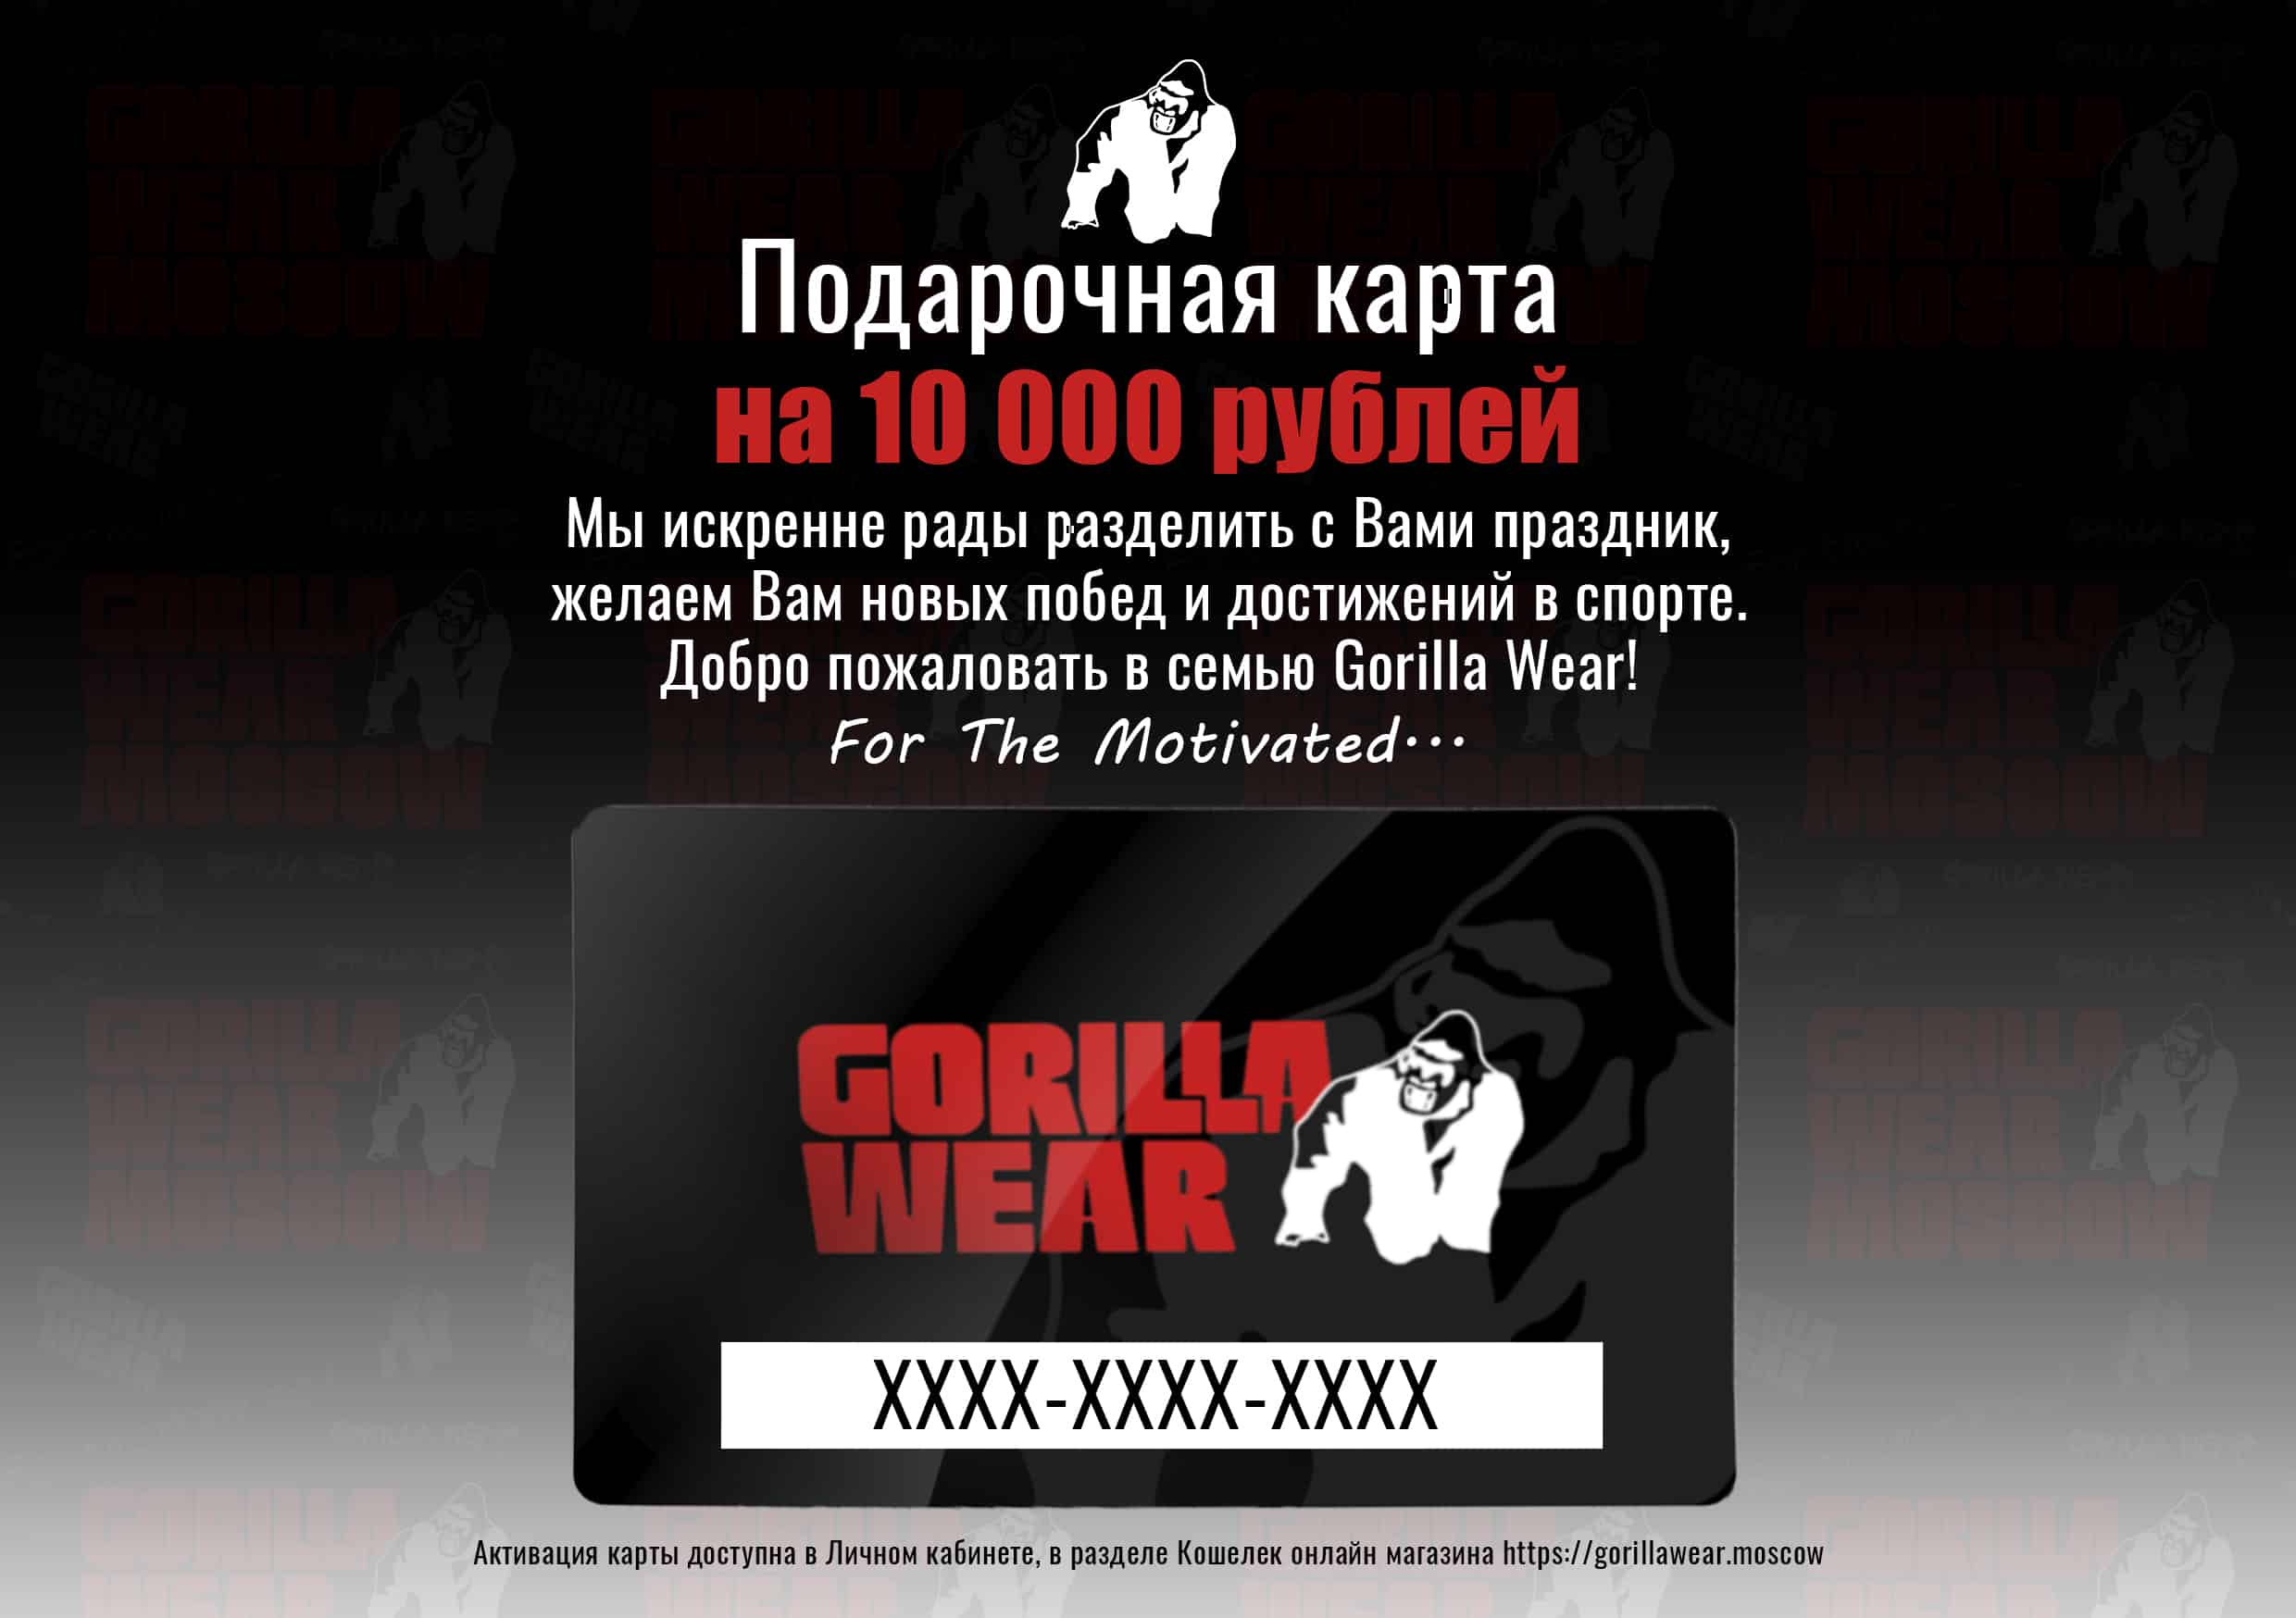 Подарочная карта Gorilla Wear на 10000 рублей